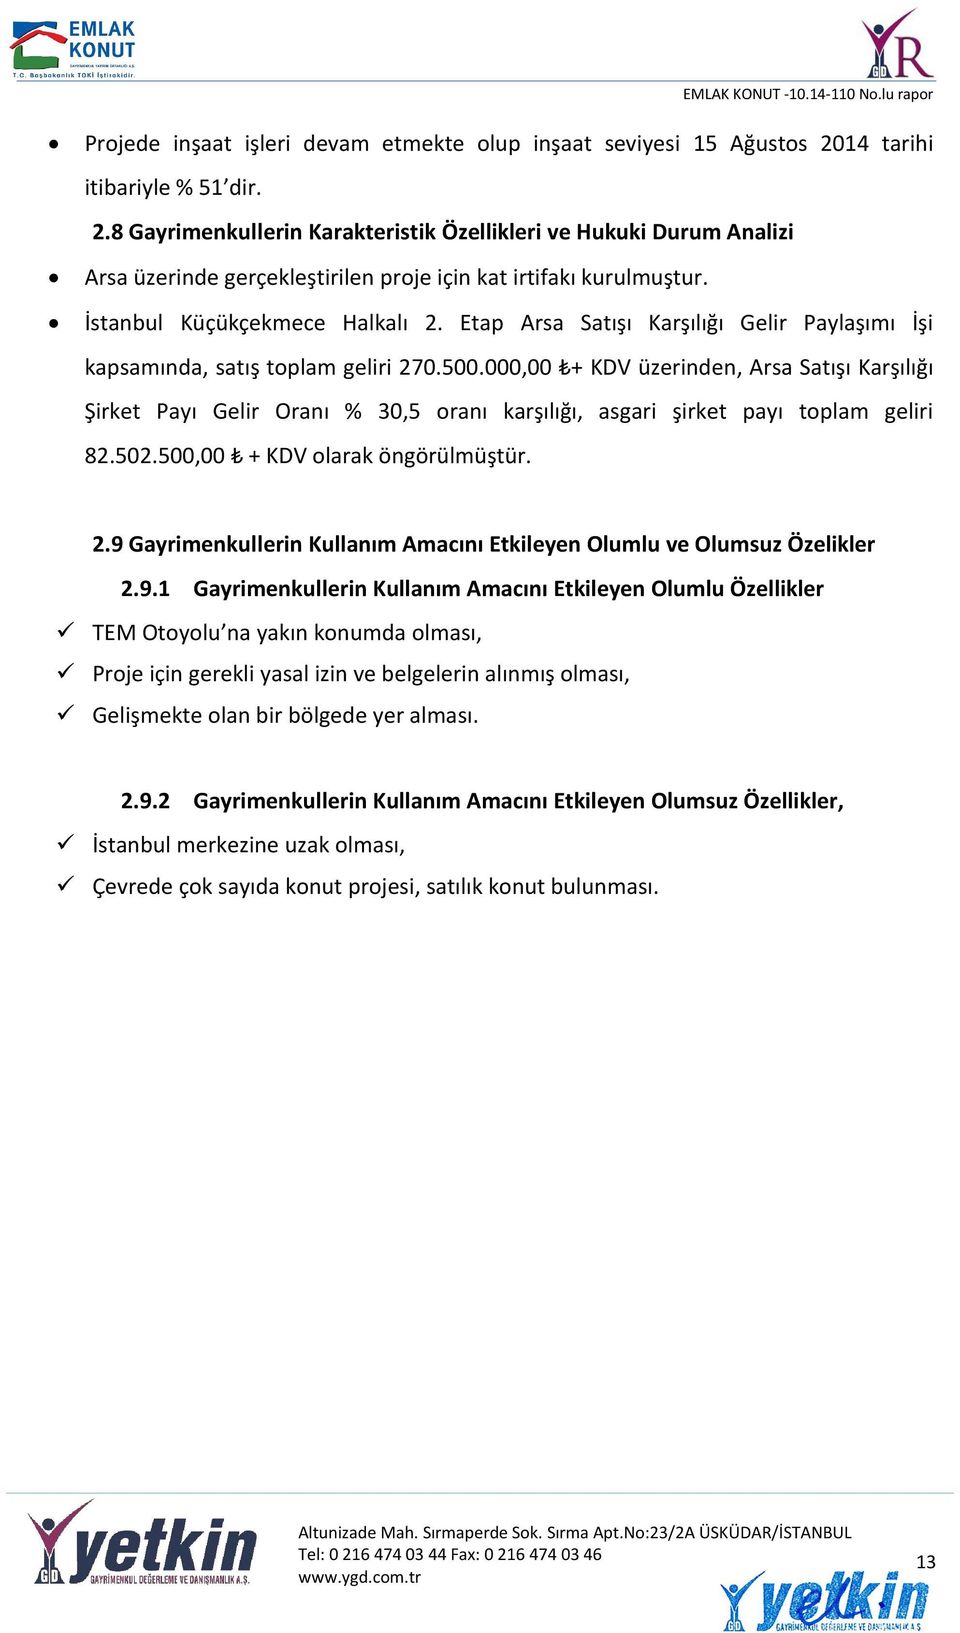 İstanbul Küçükçekmece Halkalı 2. Etap Arsa Satışı Karşılığı Gelir Paylaşımı İşi kapsamında, satış toplam geliri 270.500.